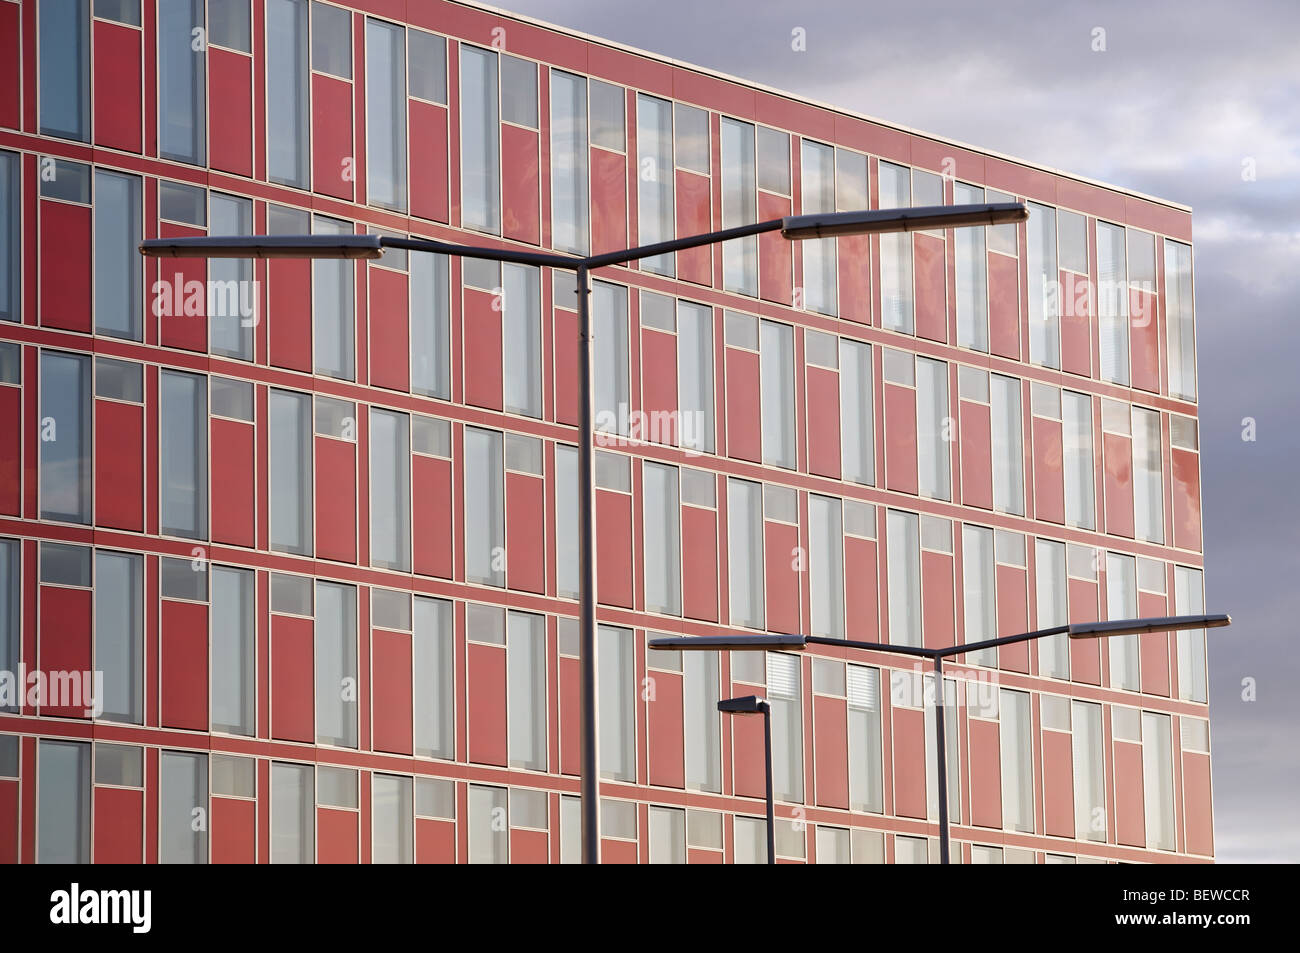 Capircorn Haus, une faible énergie, bâtiment de bureaux commerciaux, Düsseldorf, Allemagne. Banque D'Images